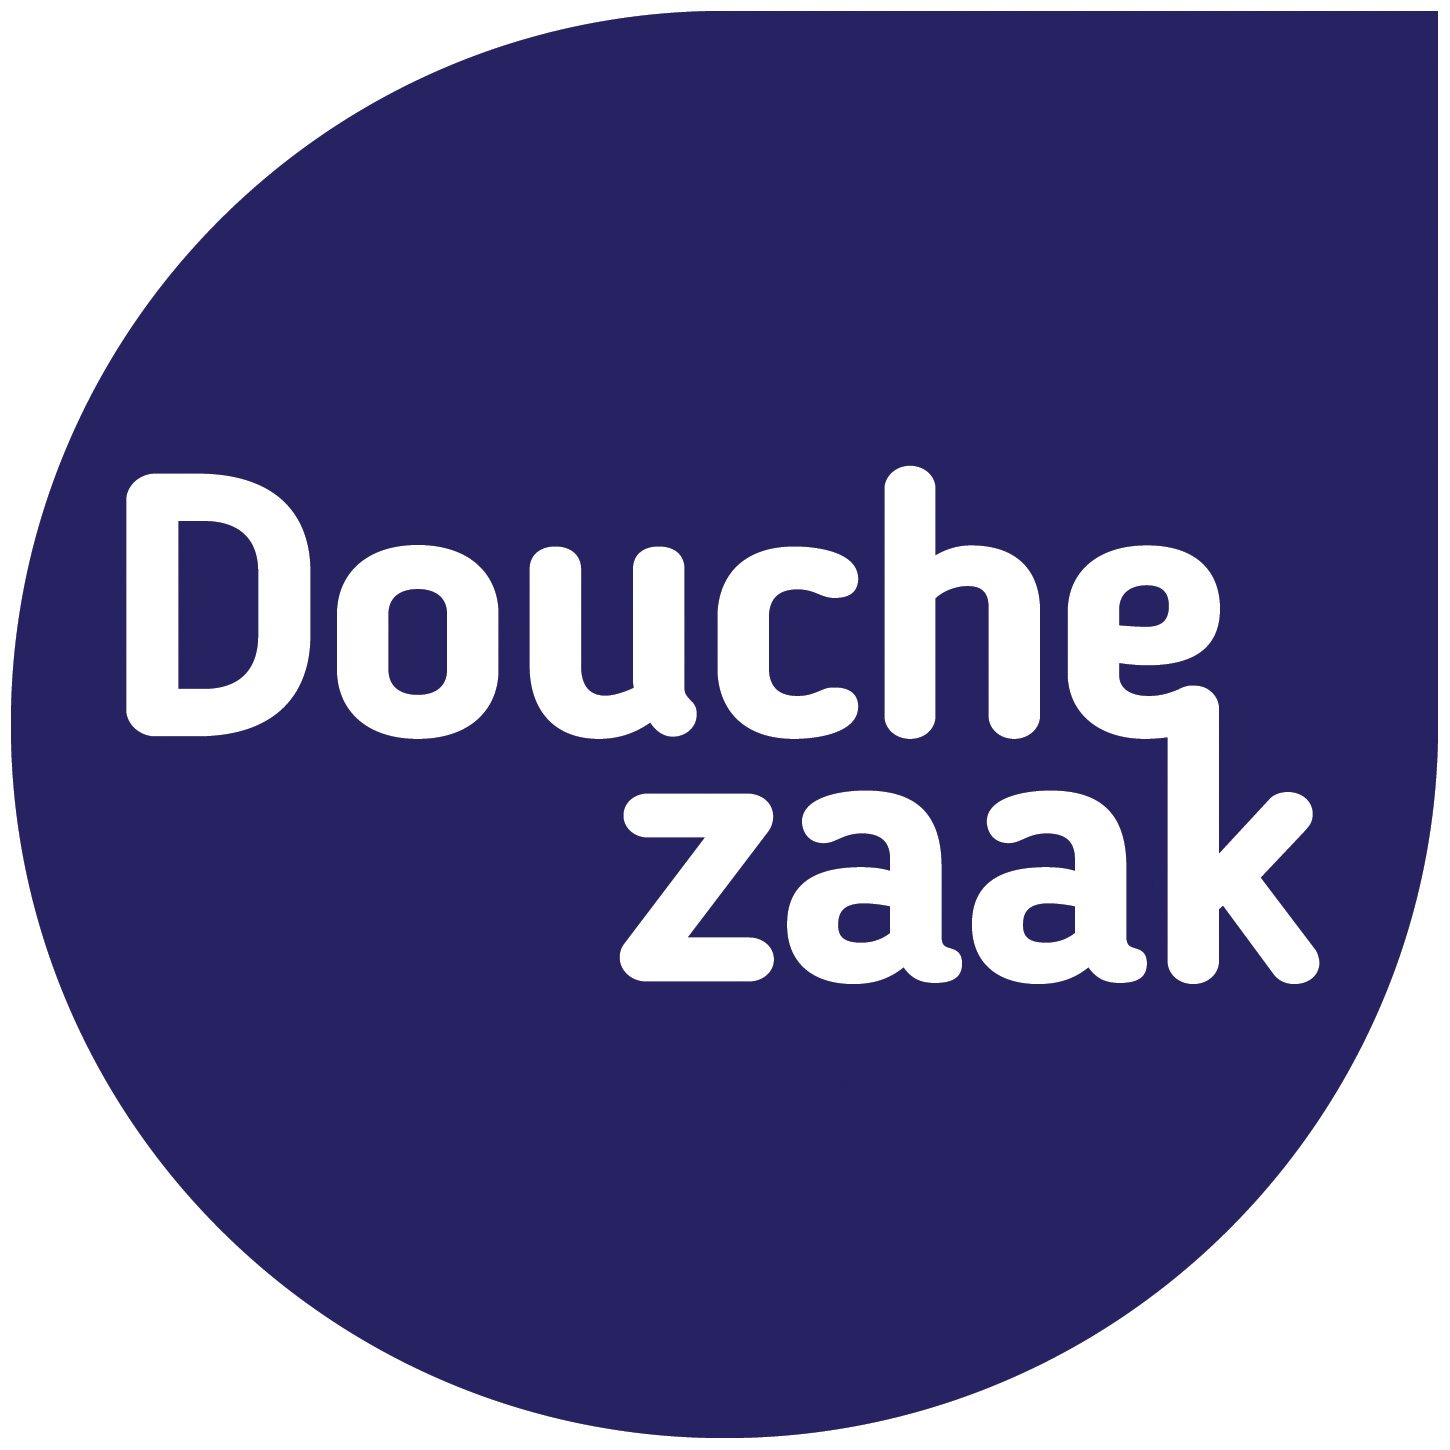 Douchezaak.nl reviews, beoordelingen en ervaringen